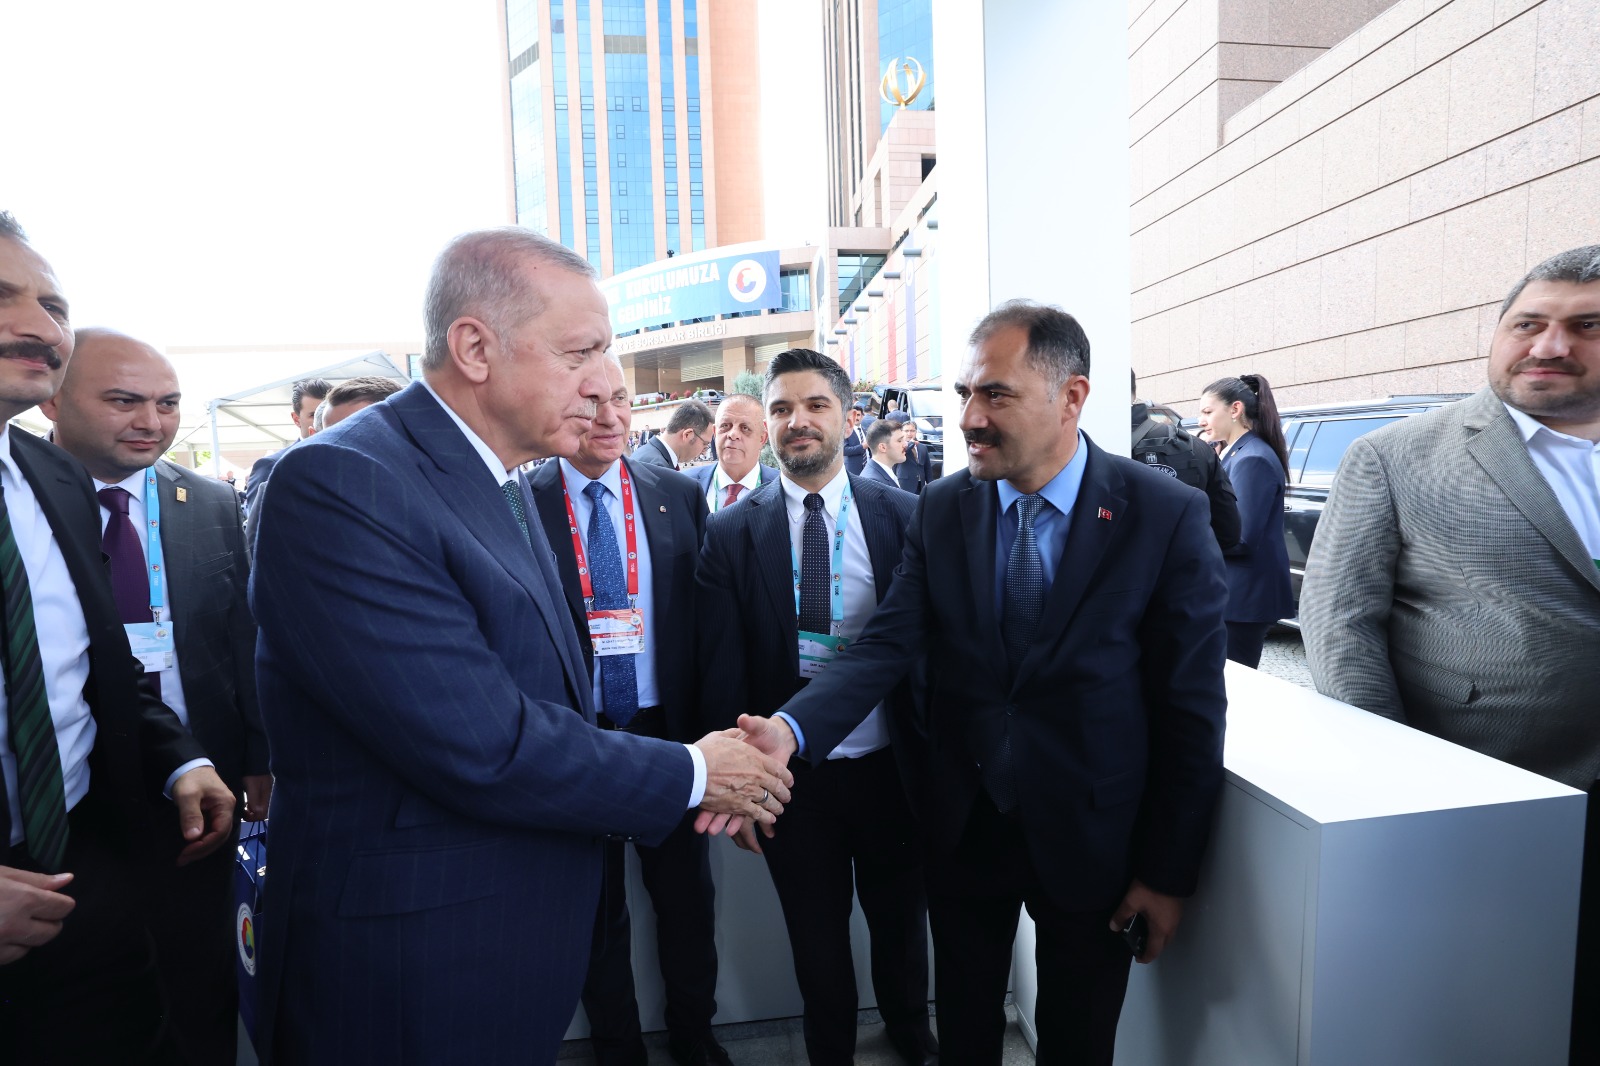 Demirci Belediye Başkanı Erkan Kara, Cumhurbaşkanı Recep Tayyip Erdoğan İle Görüştü